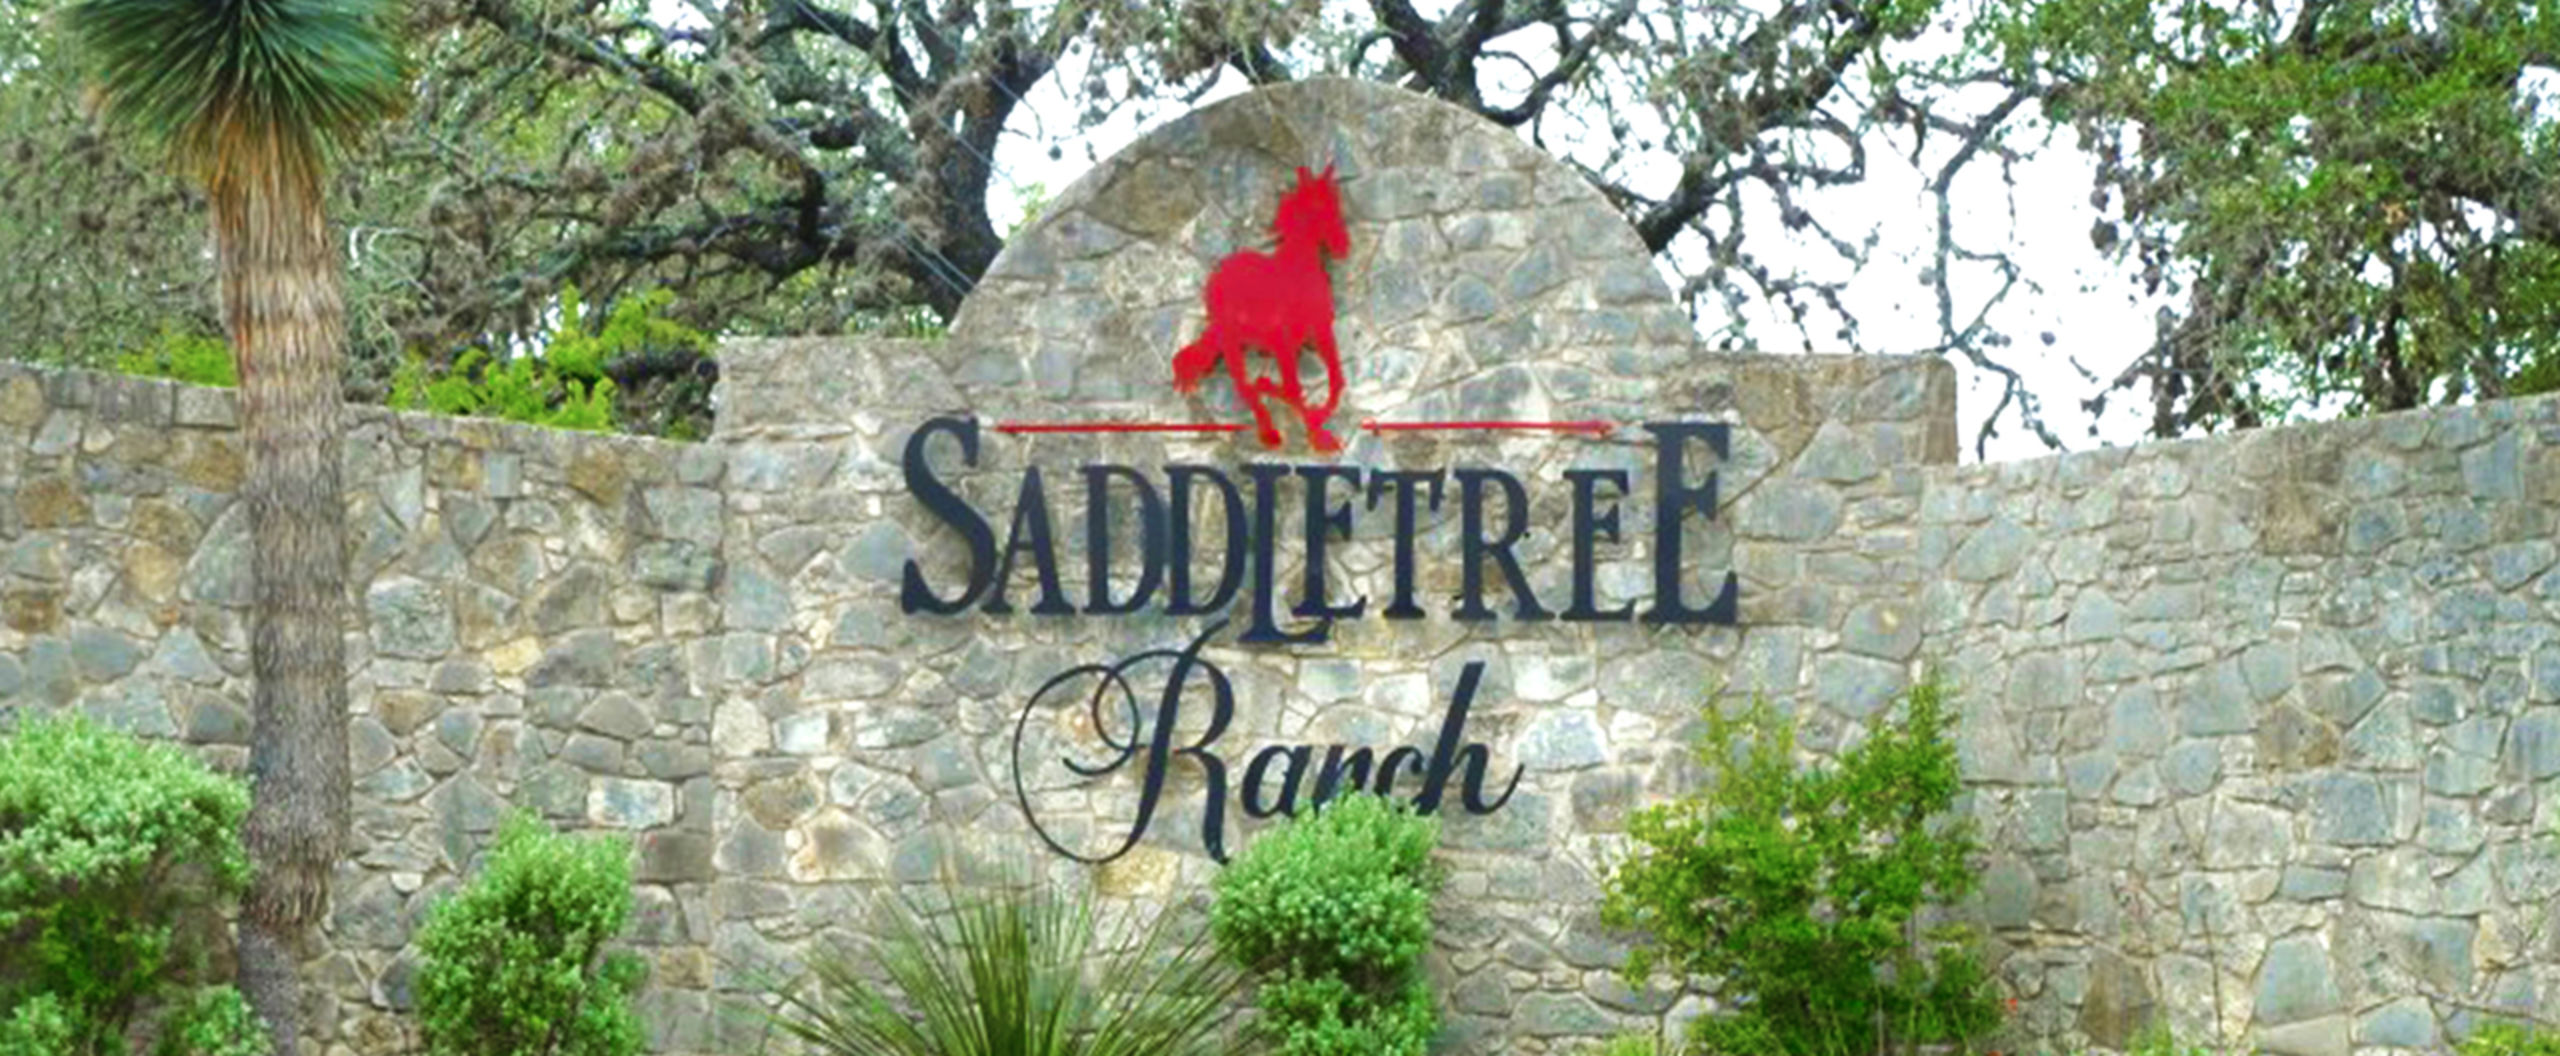 Saddletree Ranch